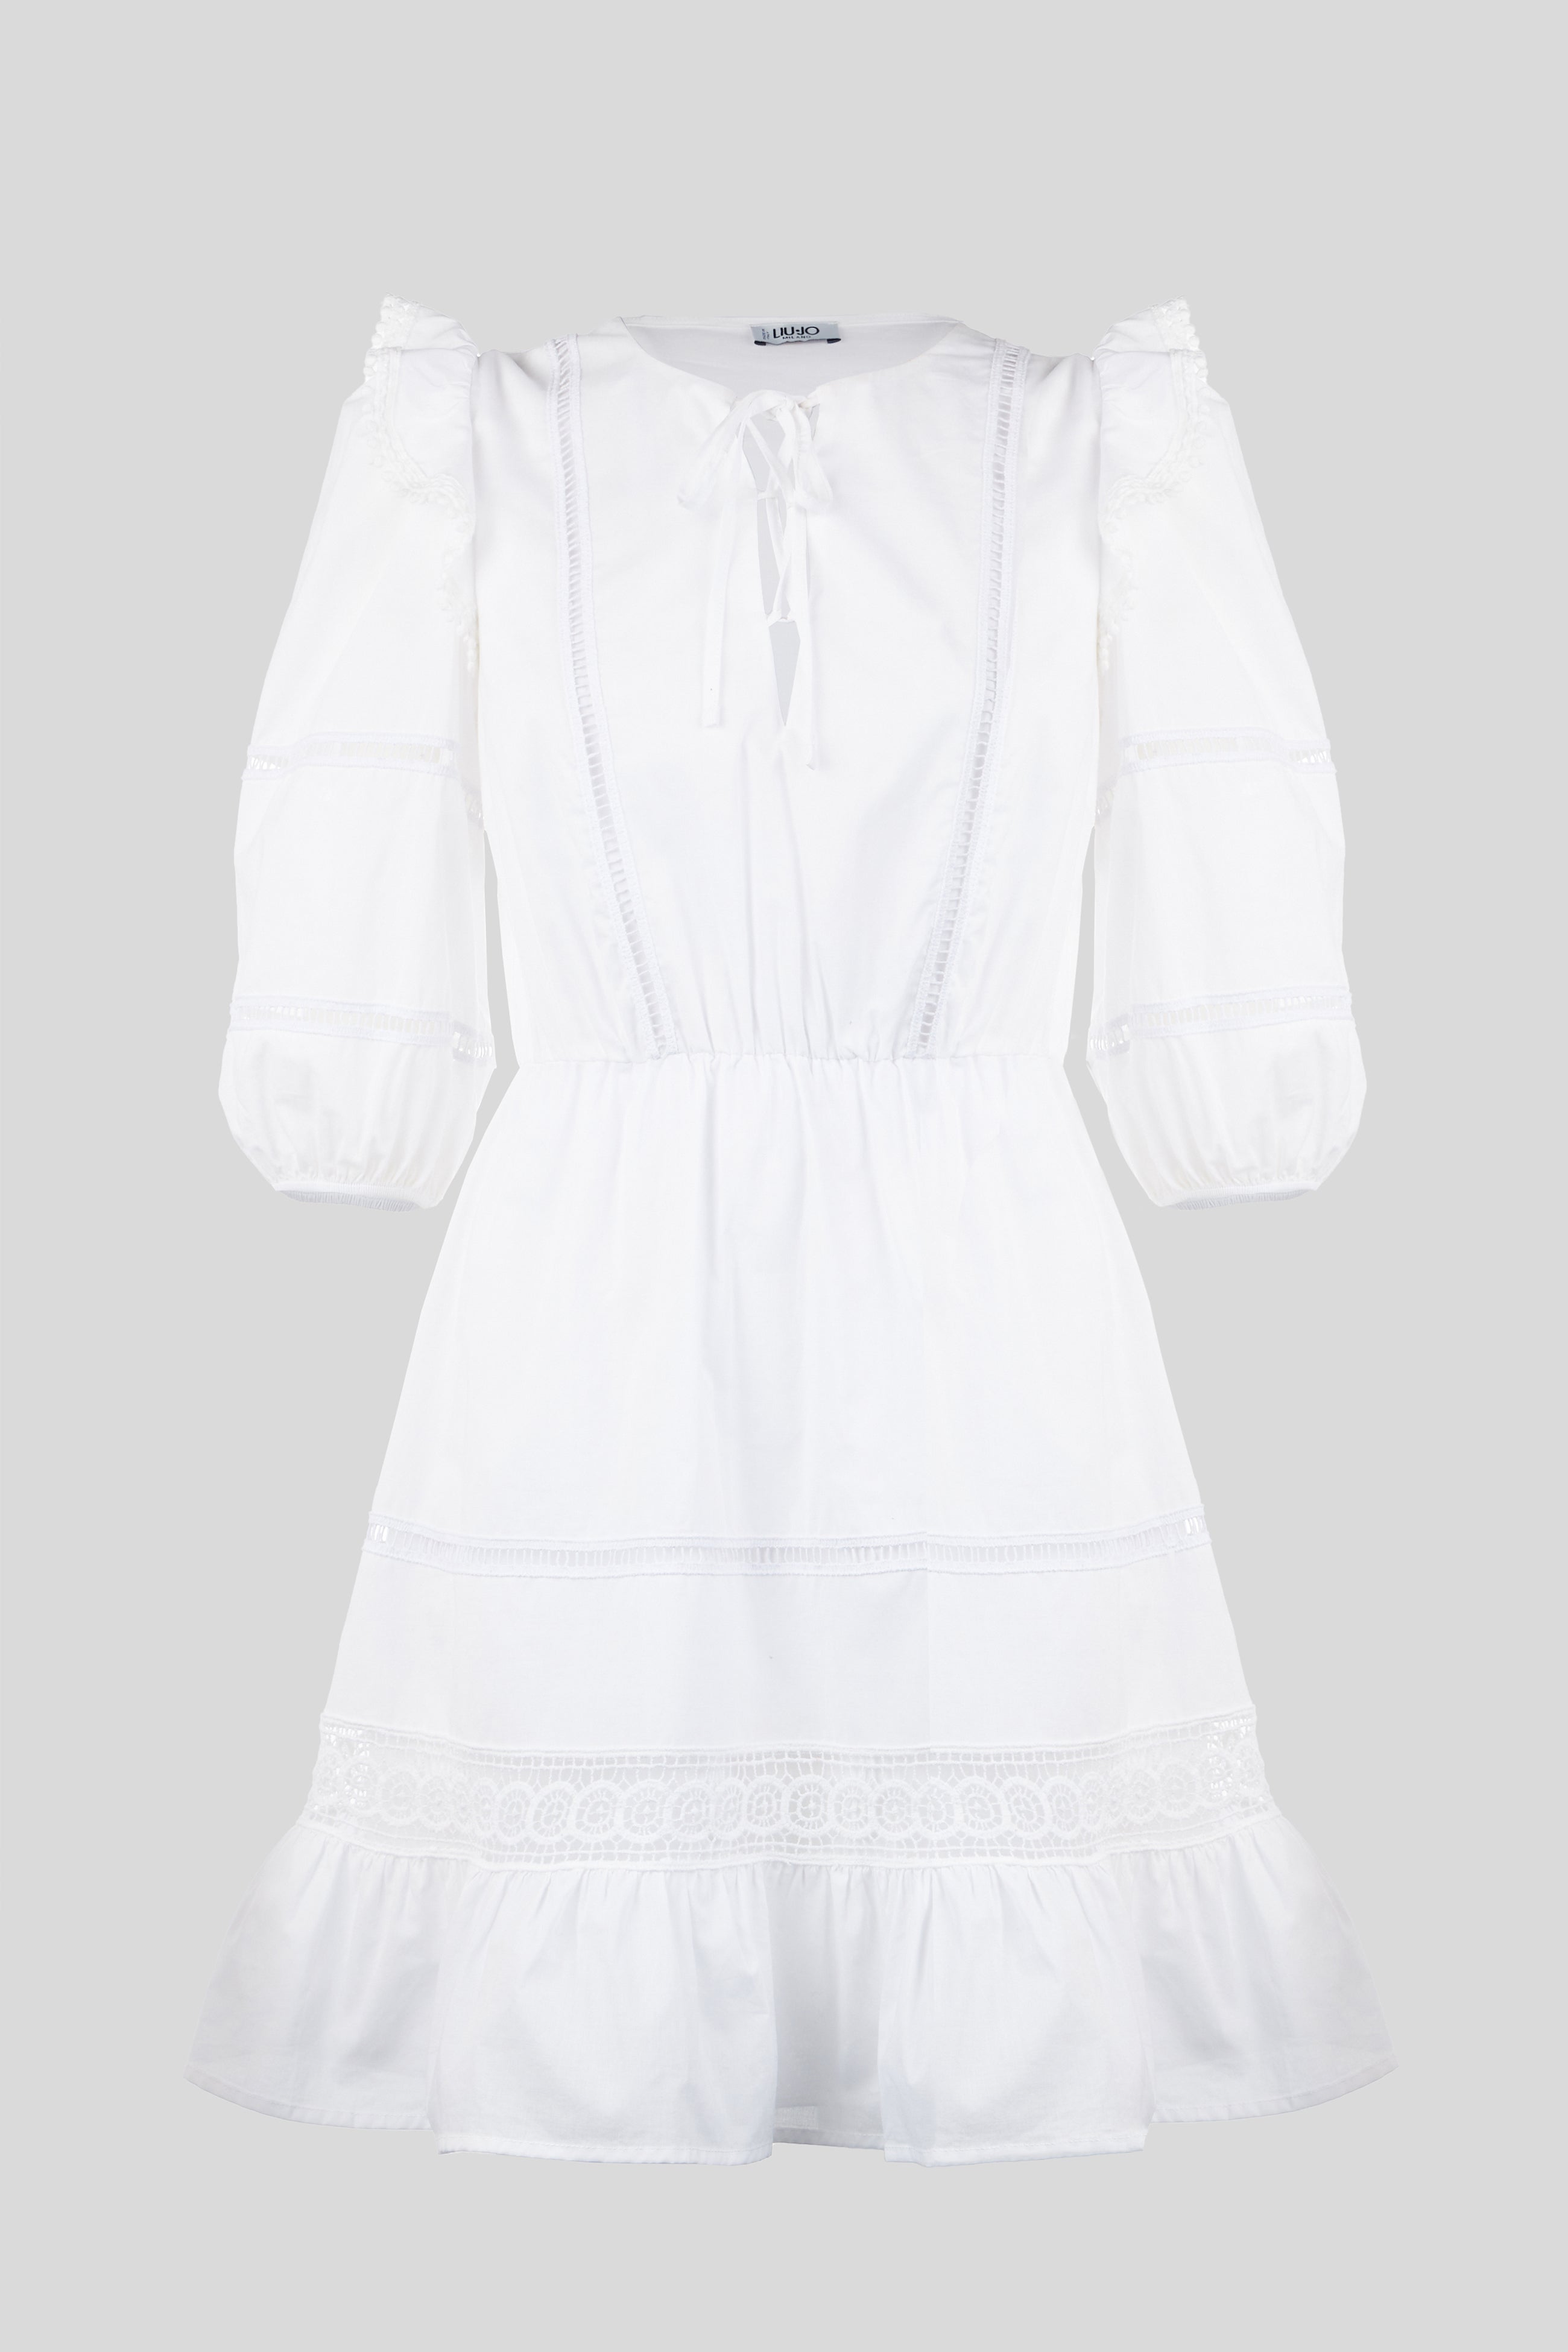 LIU JO kurzes weißes Kleid